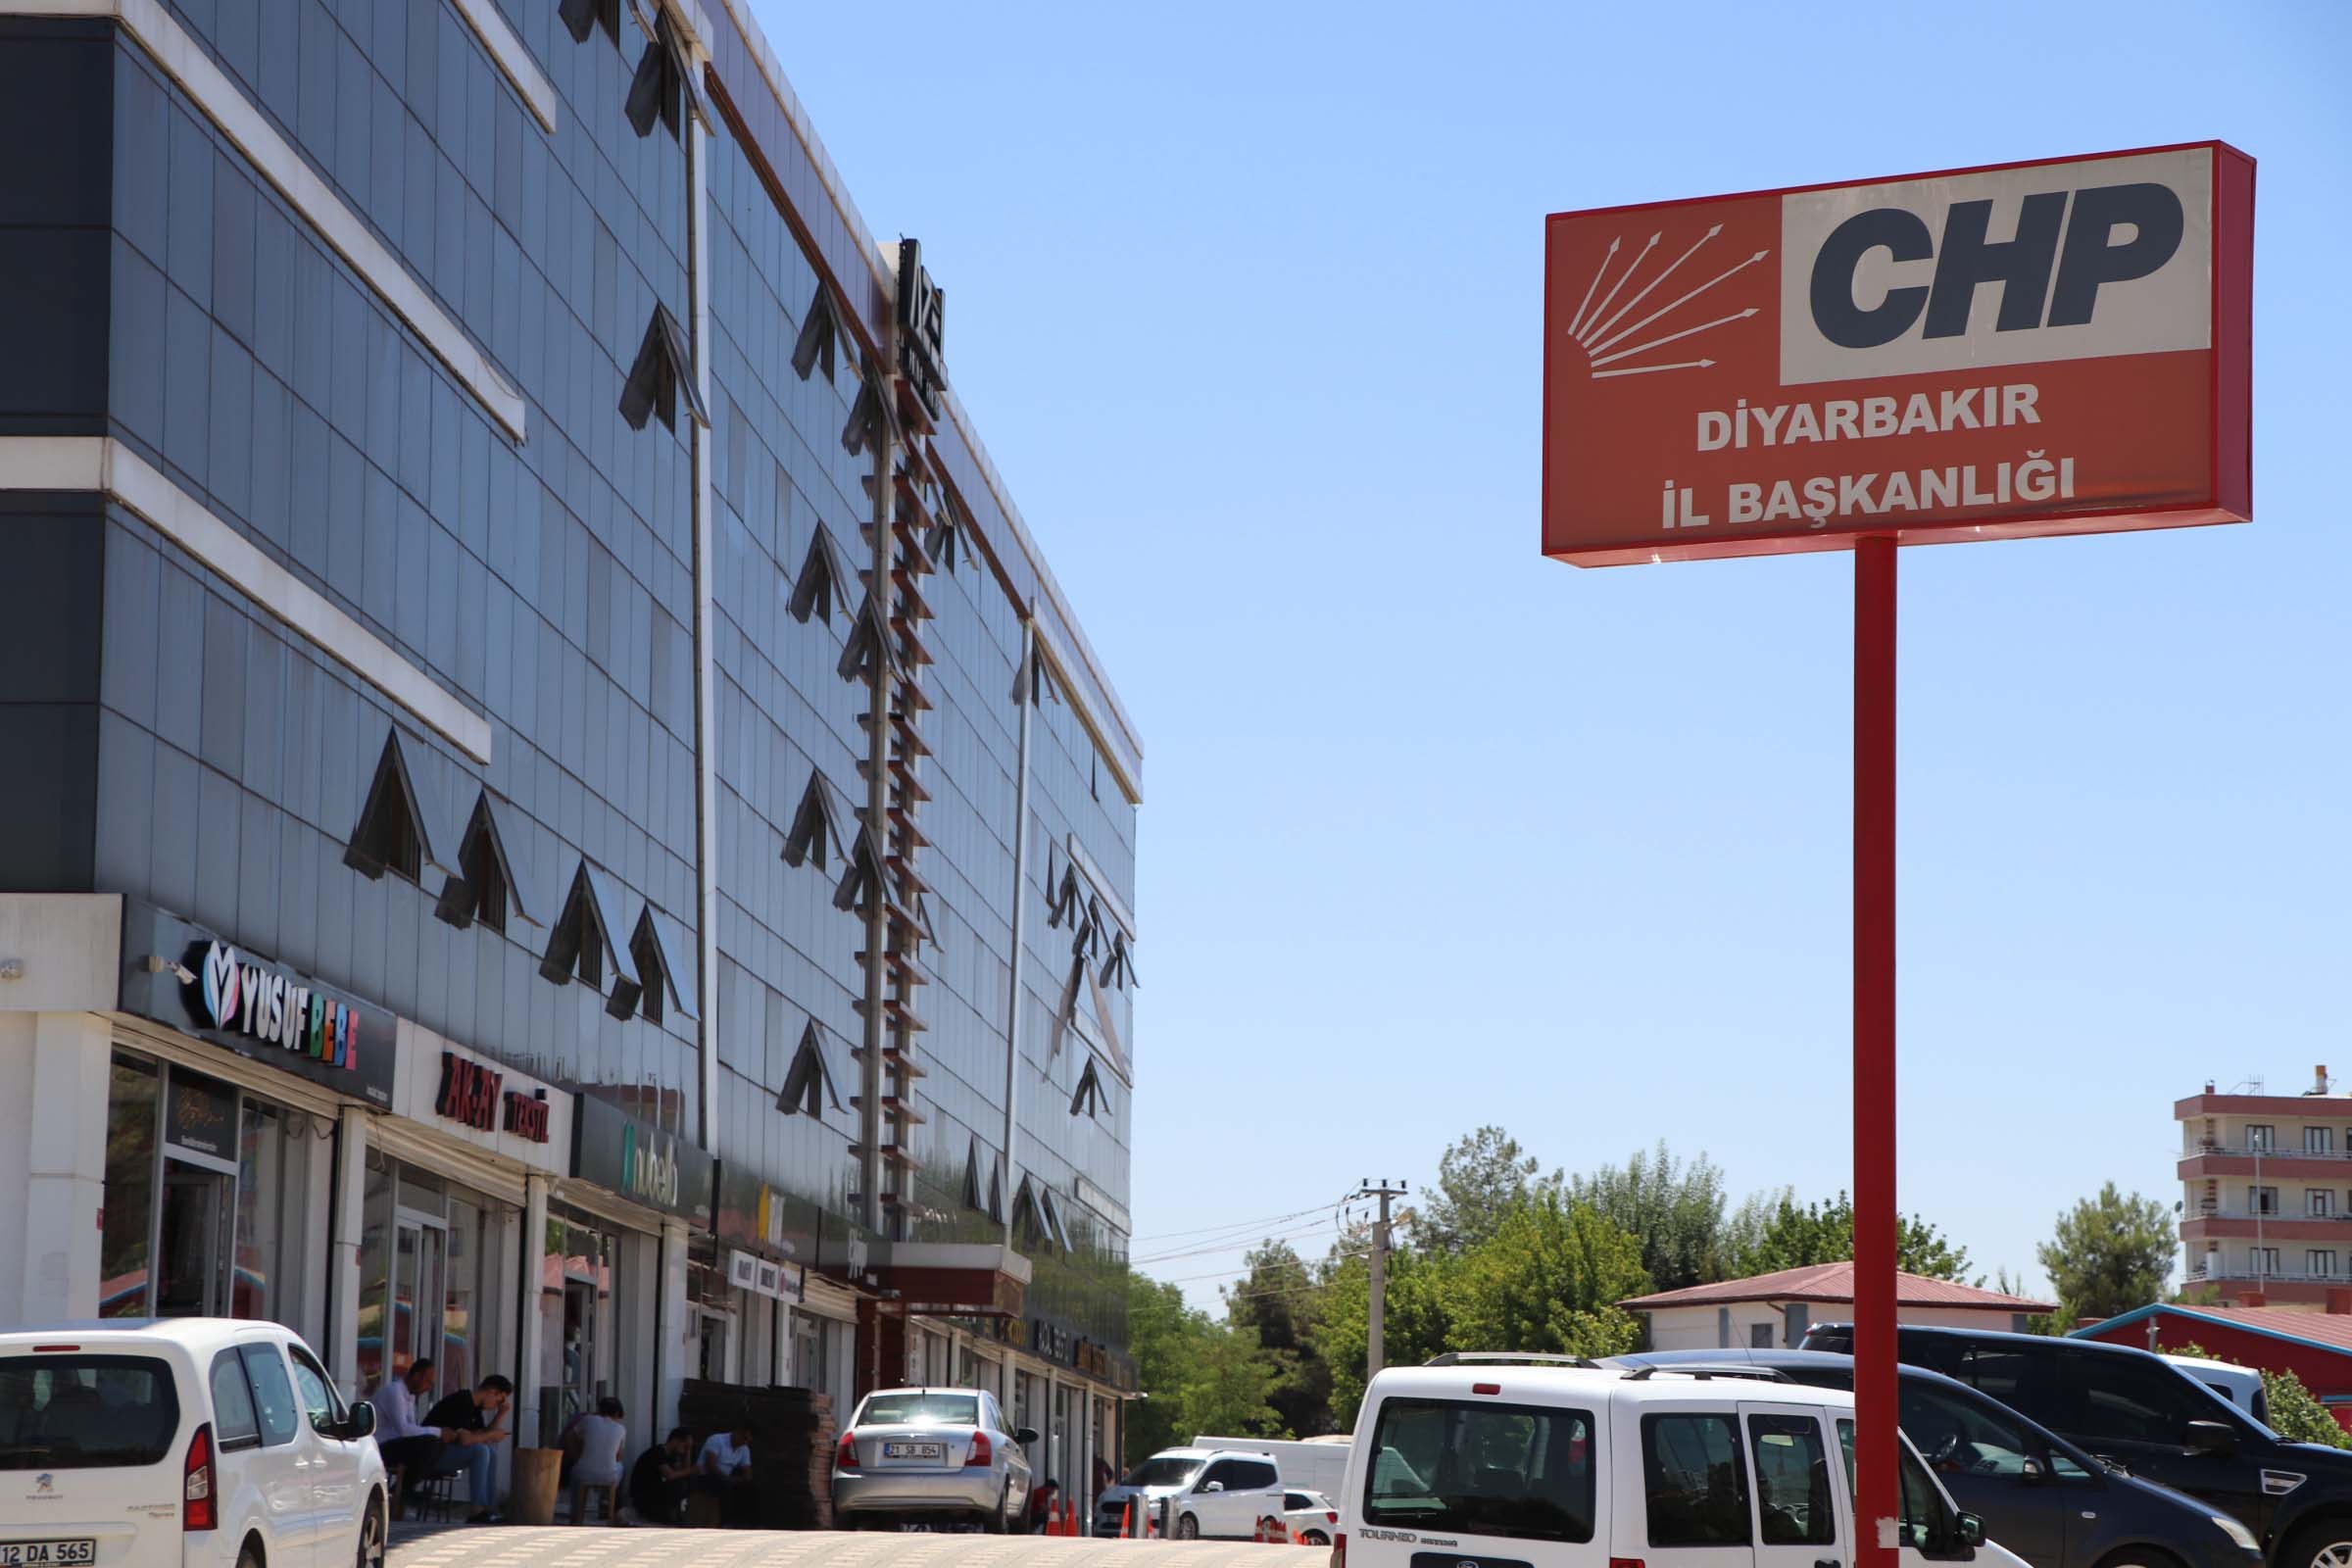 Diyarbakır CHP’de toplu istifa